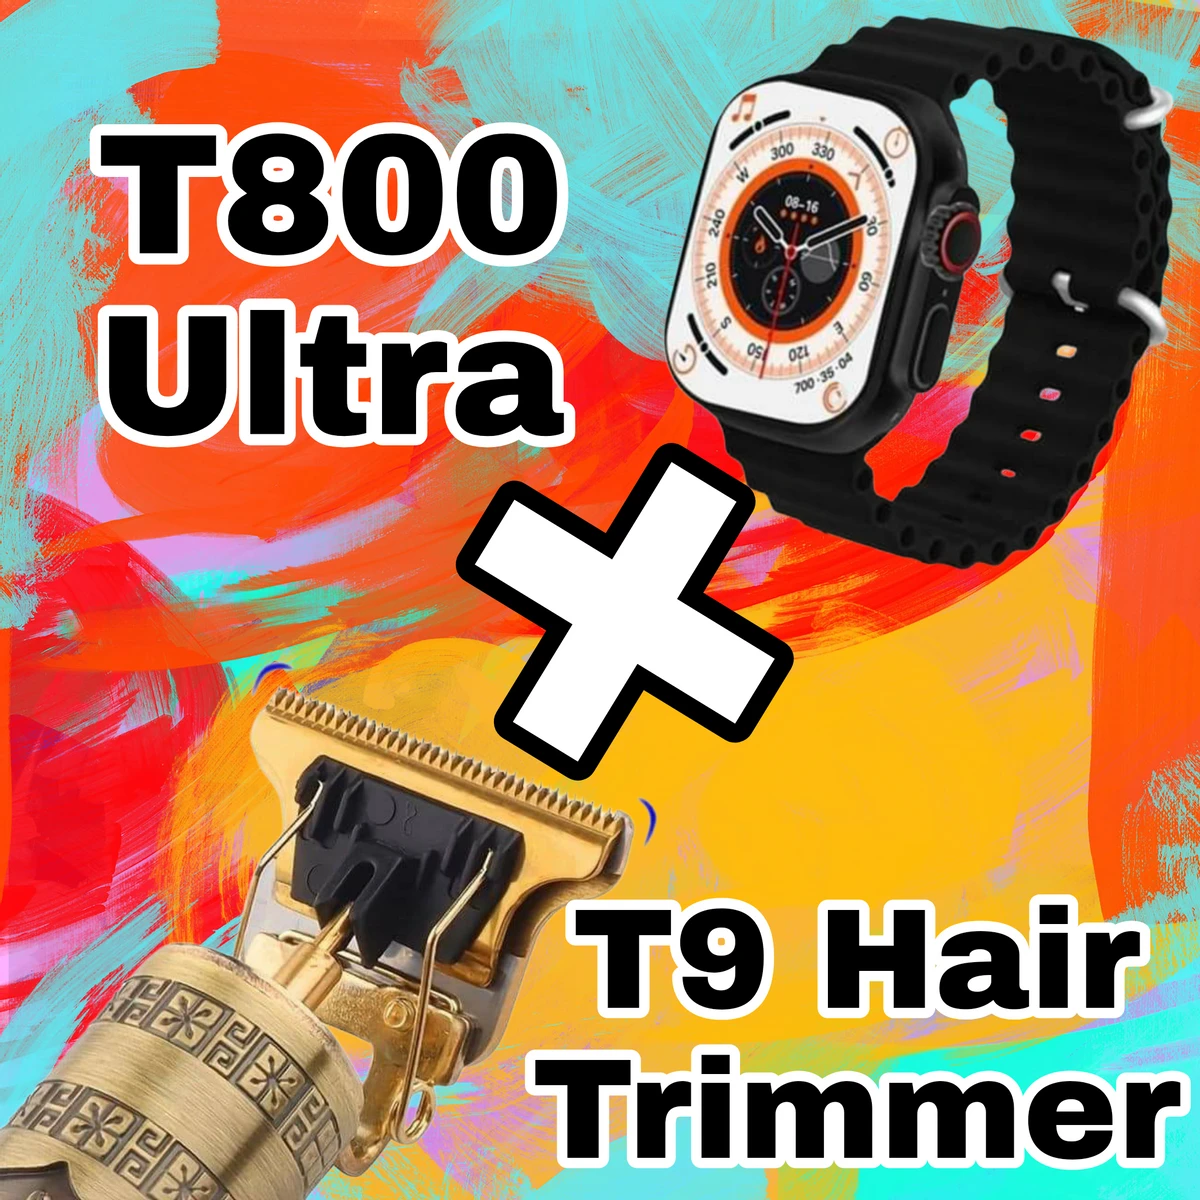 বান্ডেল অফার: (Save 49TK) T800 Ultra Smart Watche + T9 Professional Hair Trimmer